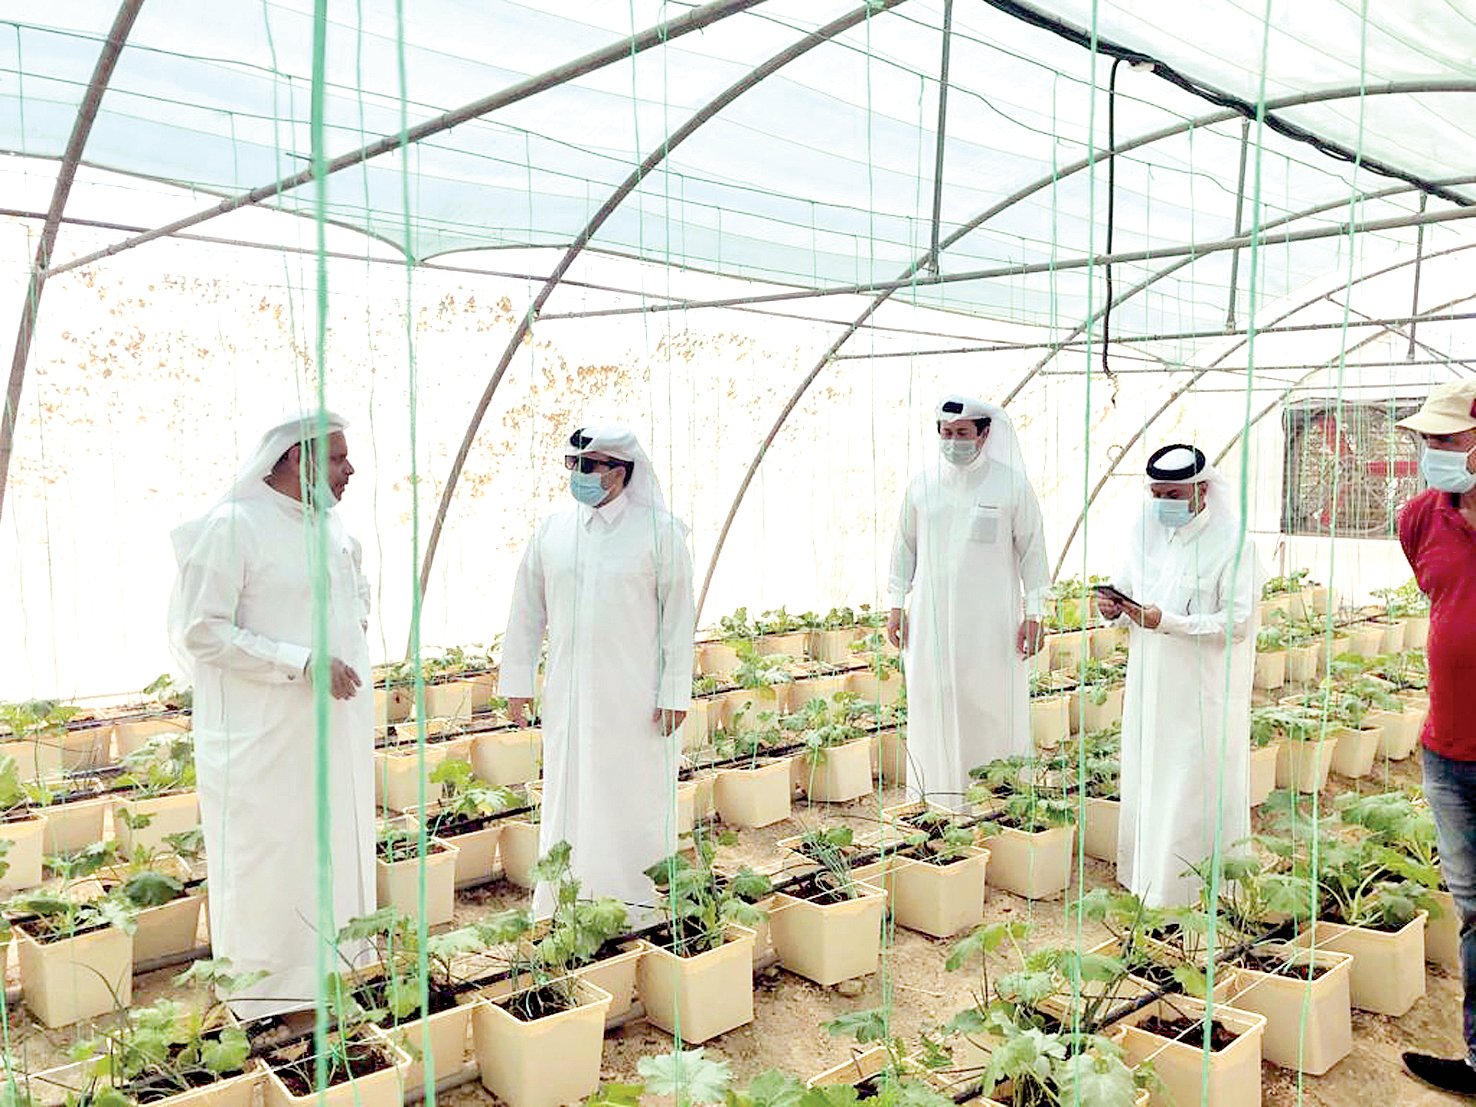 قطر تتصدر الدول العربية في جودة الإنتاج الغذائي